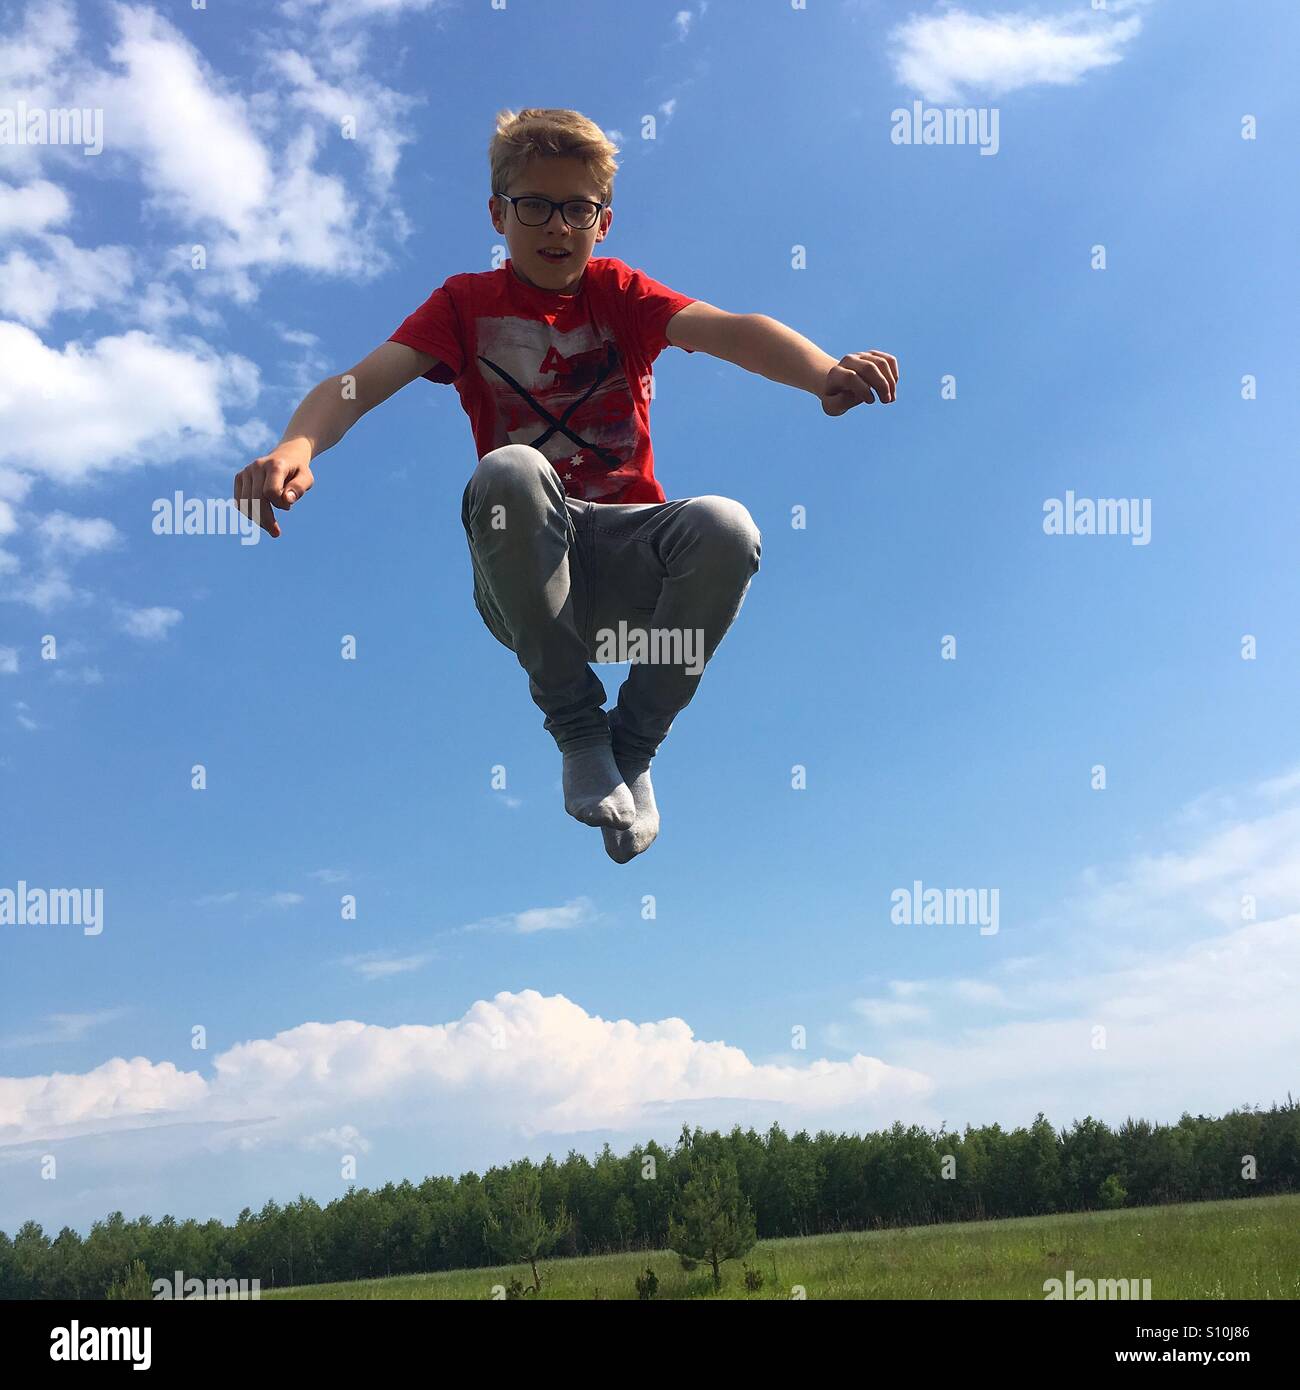 Adolescente saltando en el aire fuera de una calurosa tarde de primavera. Foto de stock